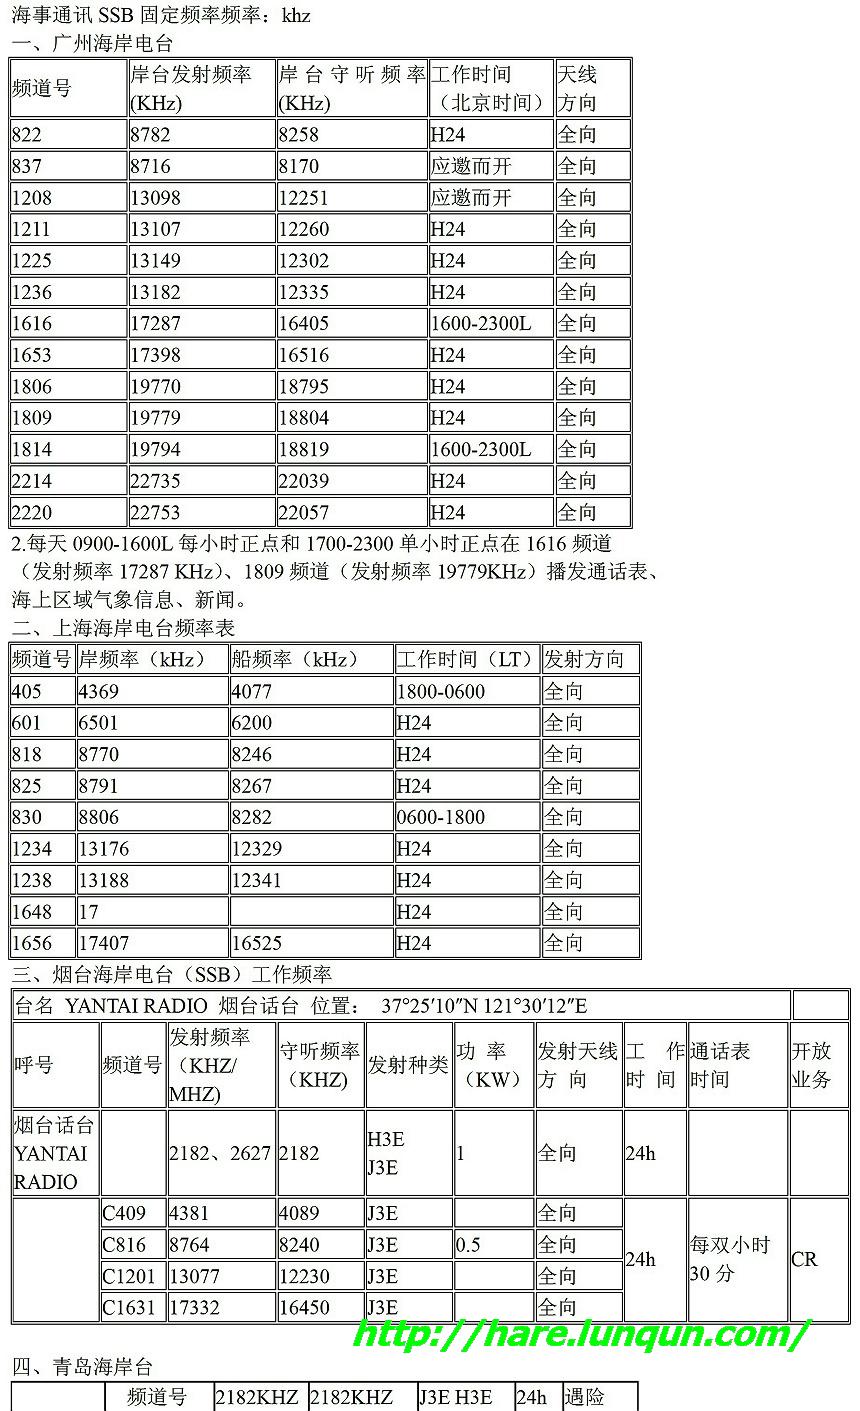 中国海事SSB频率2008版